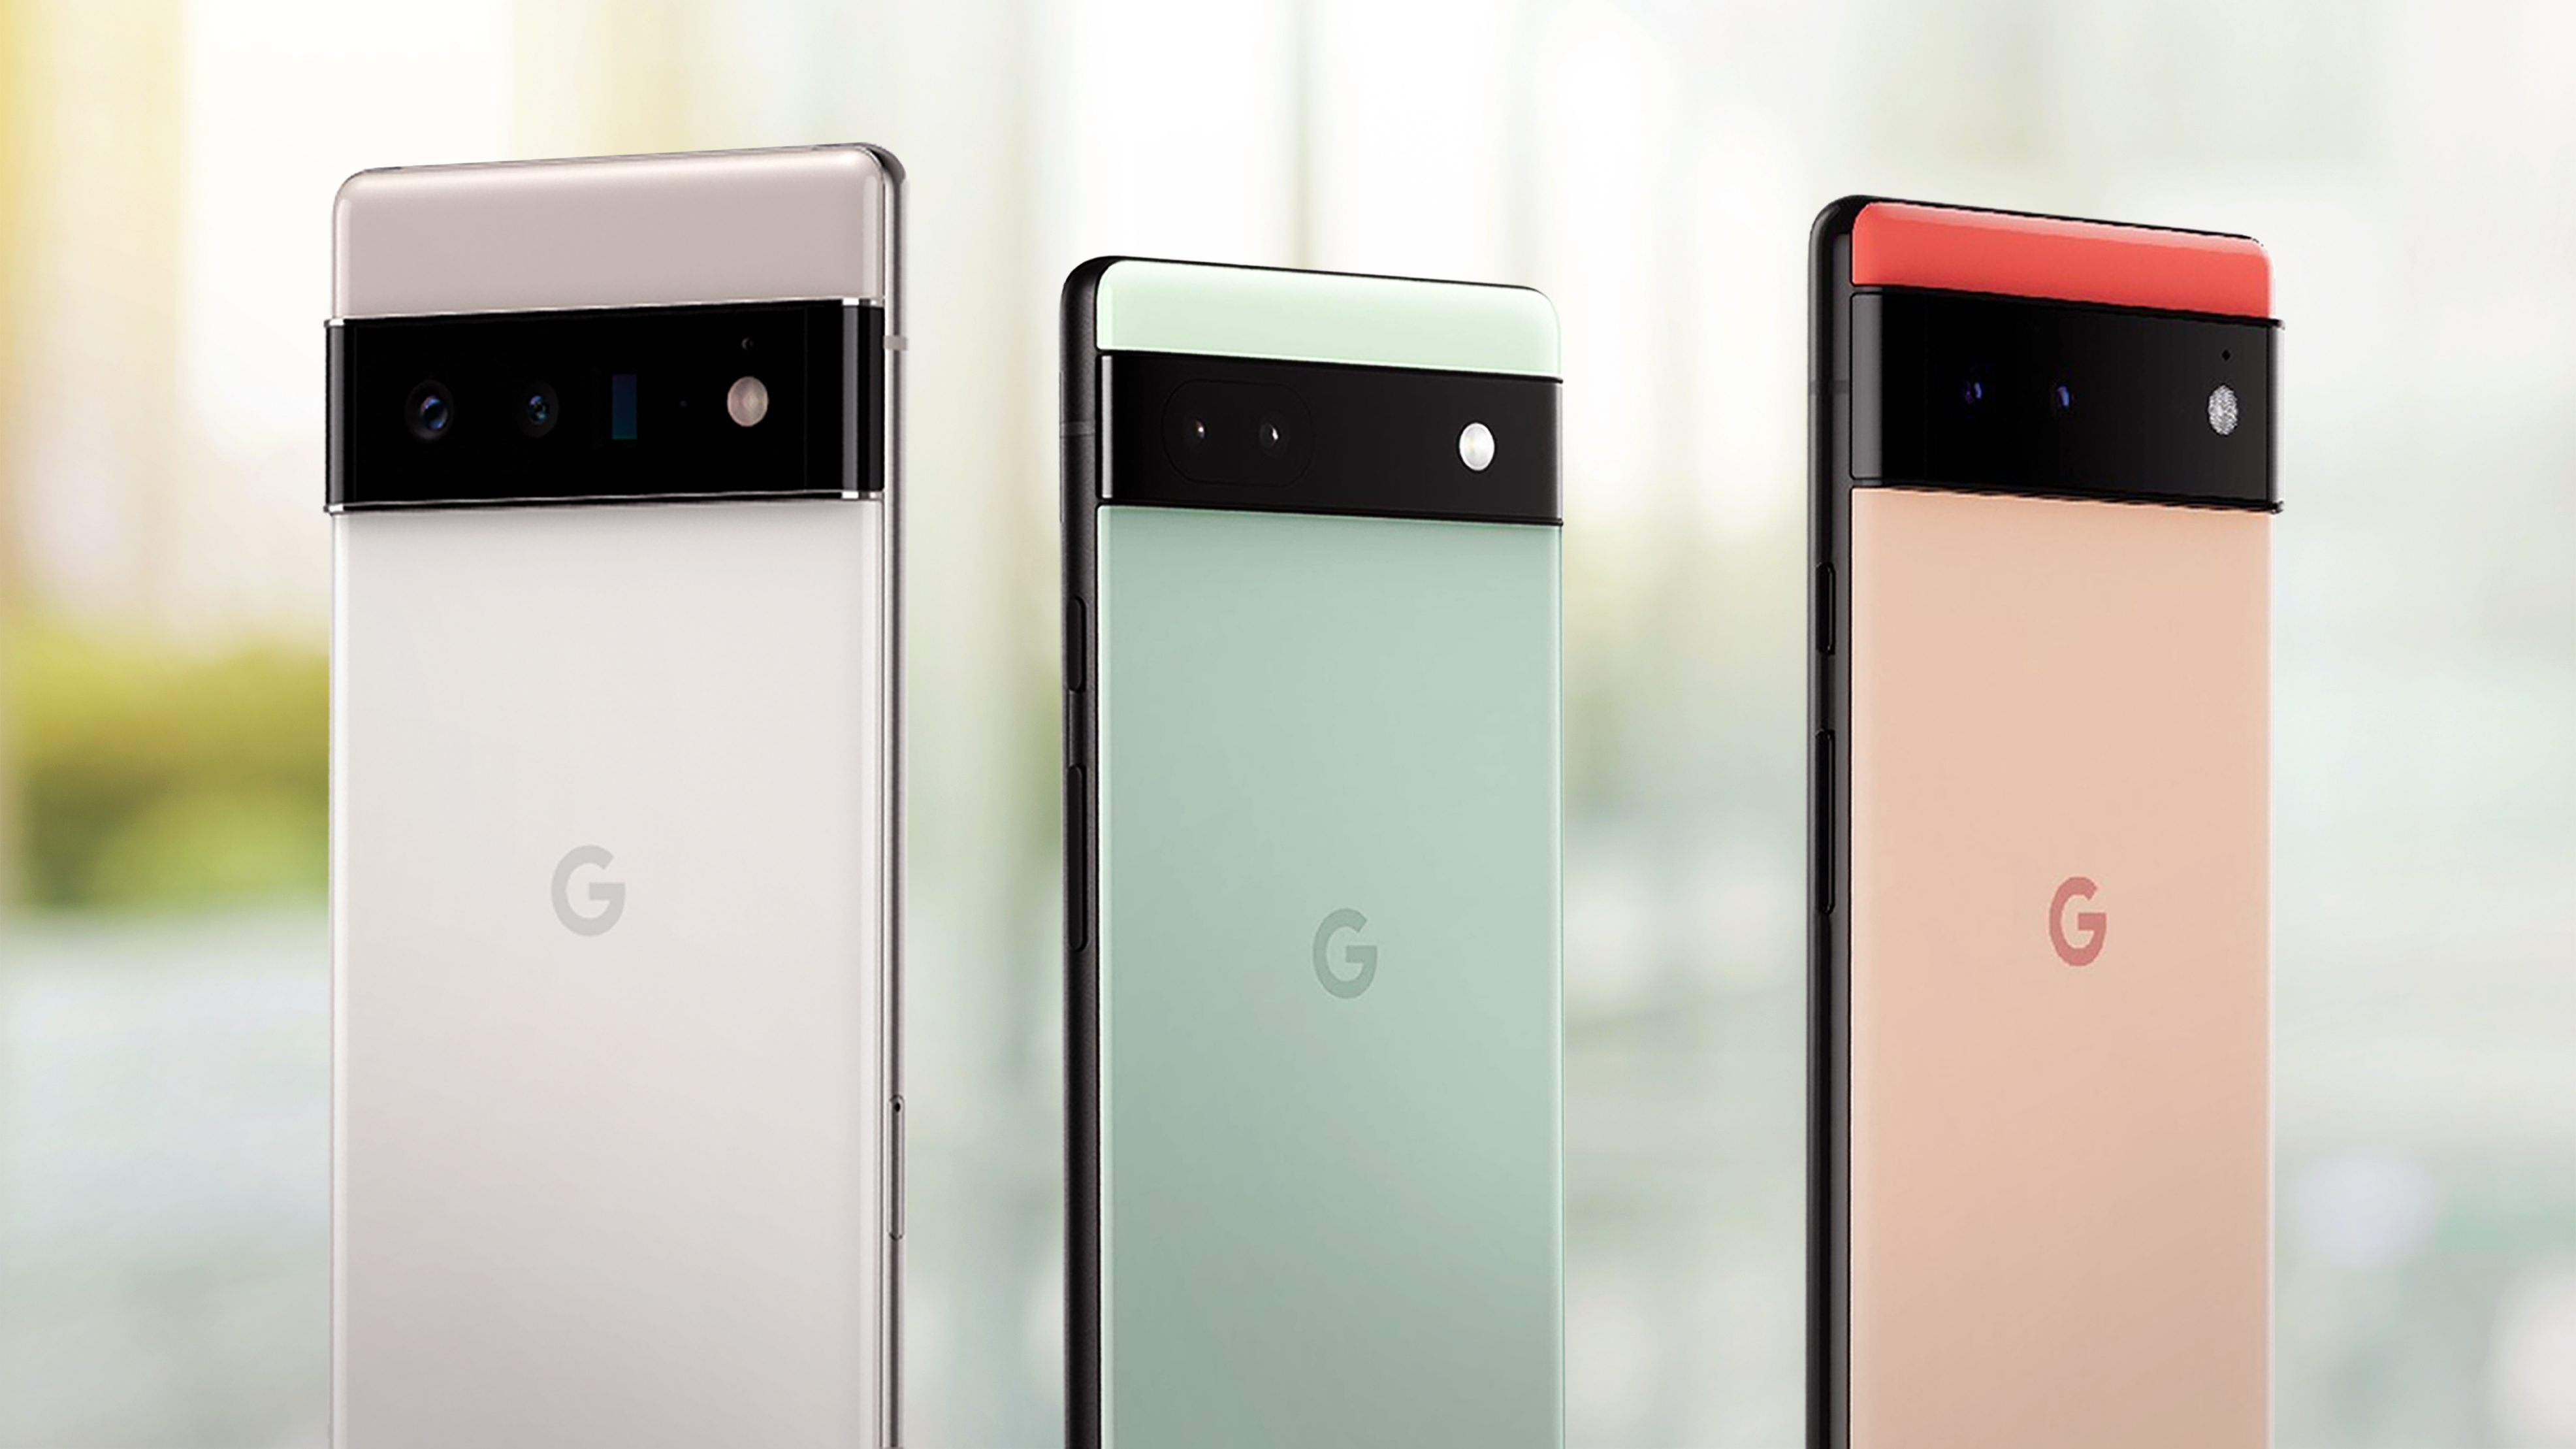 Google Pixel 6 – Colors, Features & Reviews